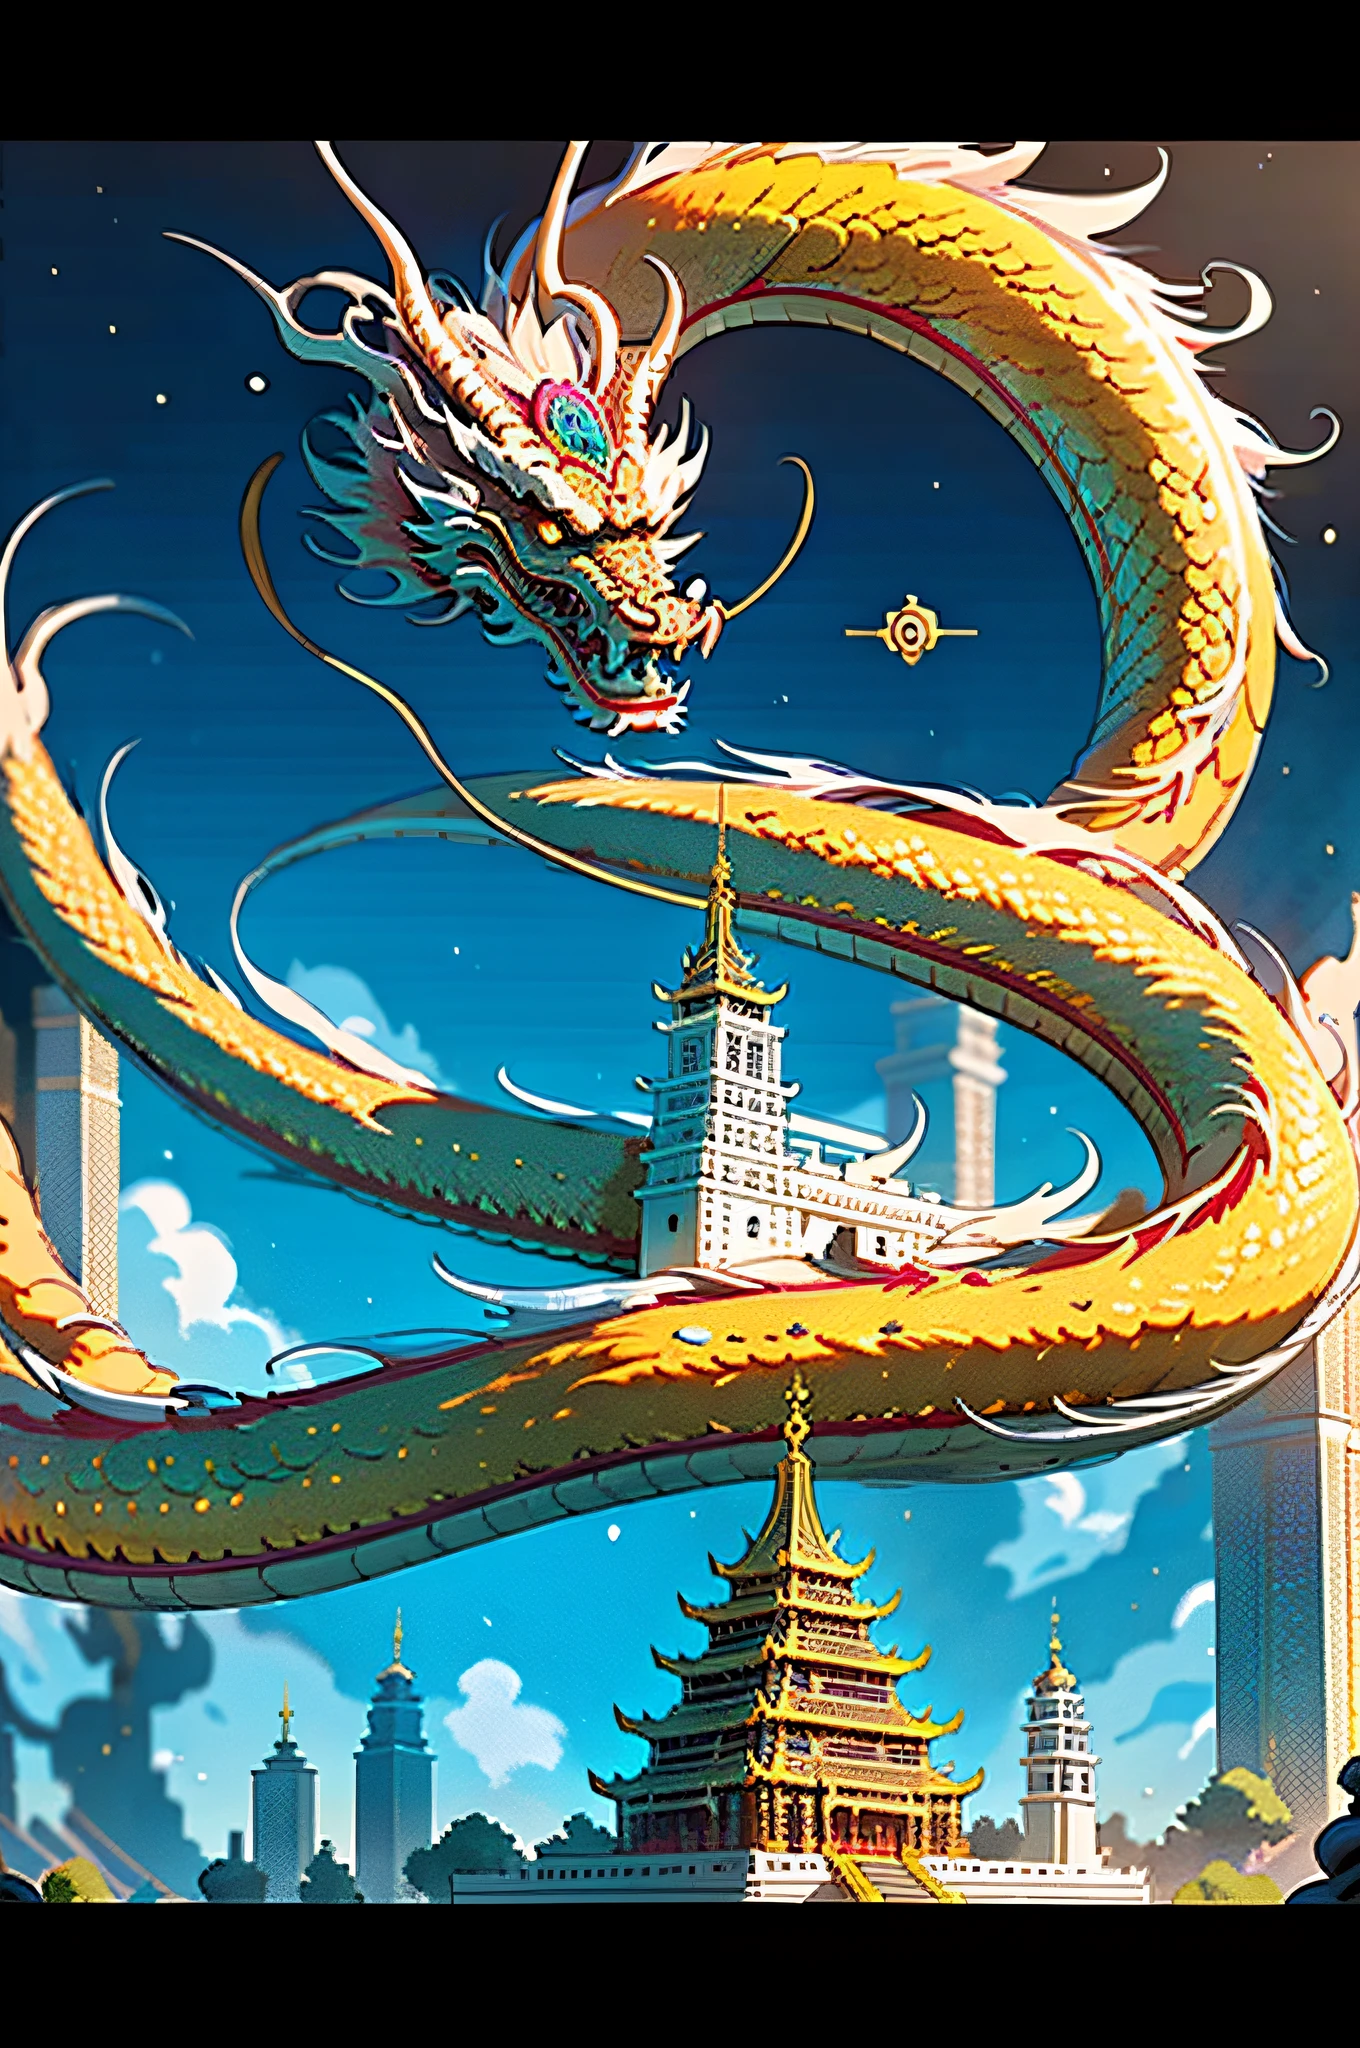 (obra de arte, melhor_qualidade, ultra detalhado, imaculado: 1.3), épico, ilustração, (Comprimento: 1.2), dragão oriental, "Templo Distópico, Dragão dourado"